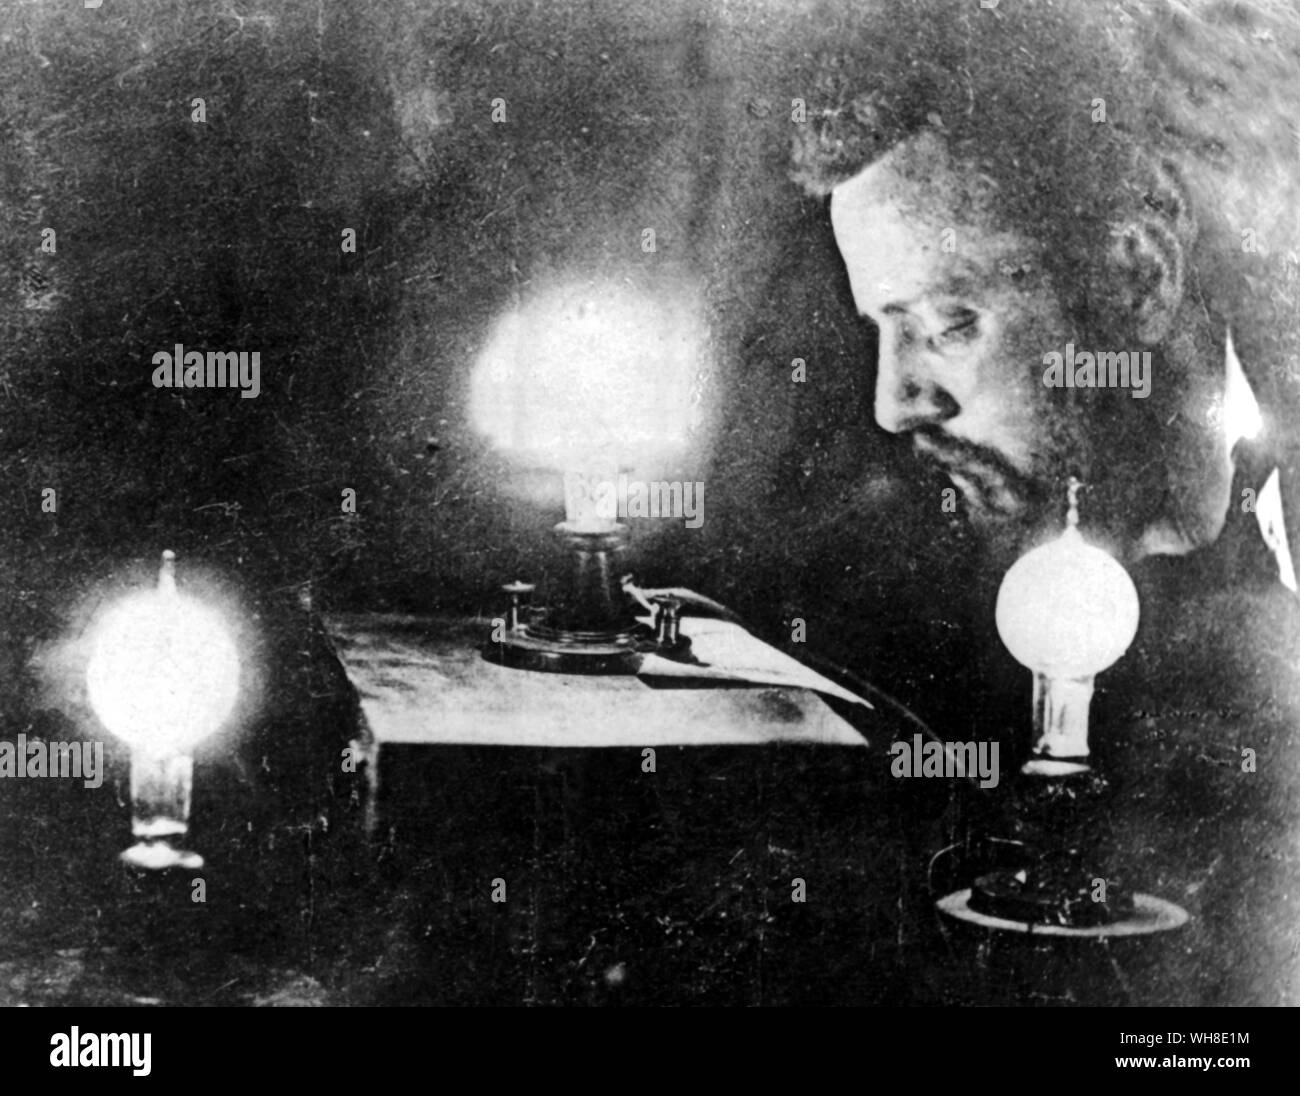 Charles Batchelor (1845-1910). La prima fotografia mai preso da lampade ad incandescenza Lampade elettriche, 1883. Charles Batchelor era un inventore e stretto collaboratore di inventore americano Thomas Alva Edison. Egli è stato coinvolto in alcuni dei più grandi invenzioni e sviluppi tecnologici nella storia.. . . . Foto Stock